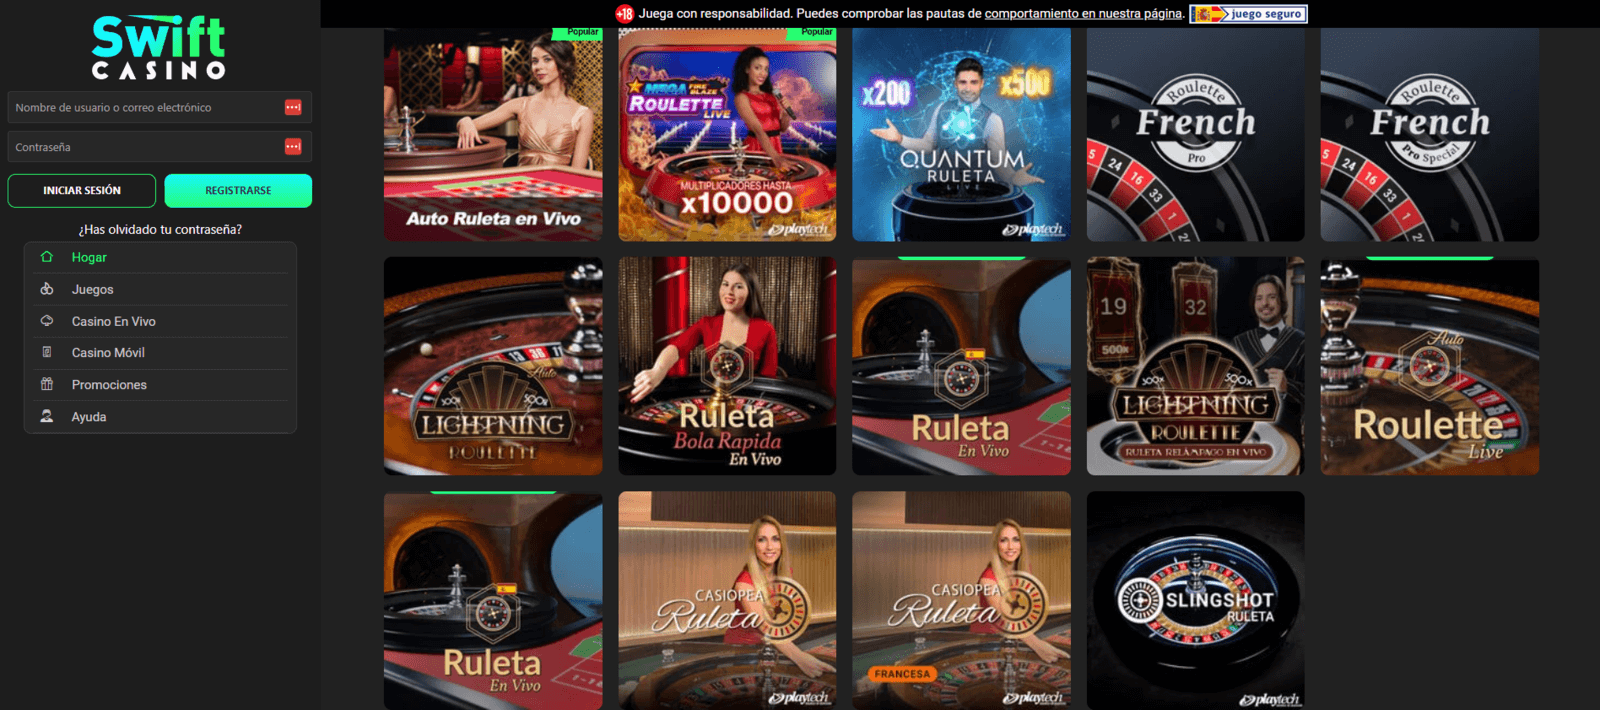 swift casino ruleta 1600